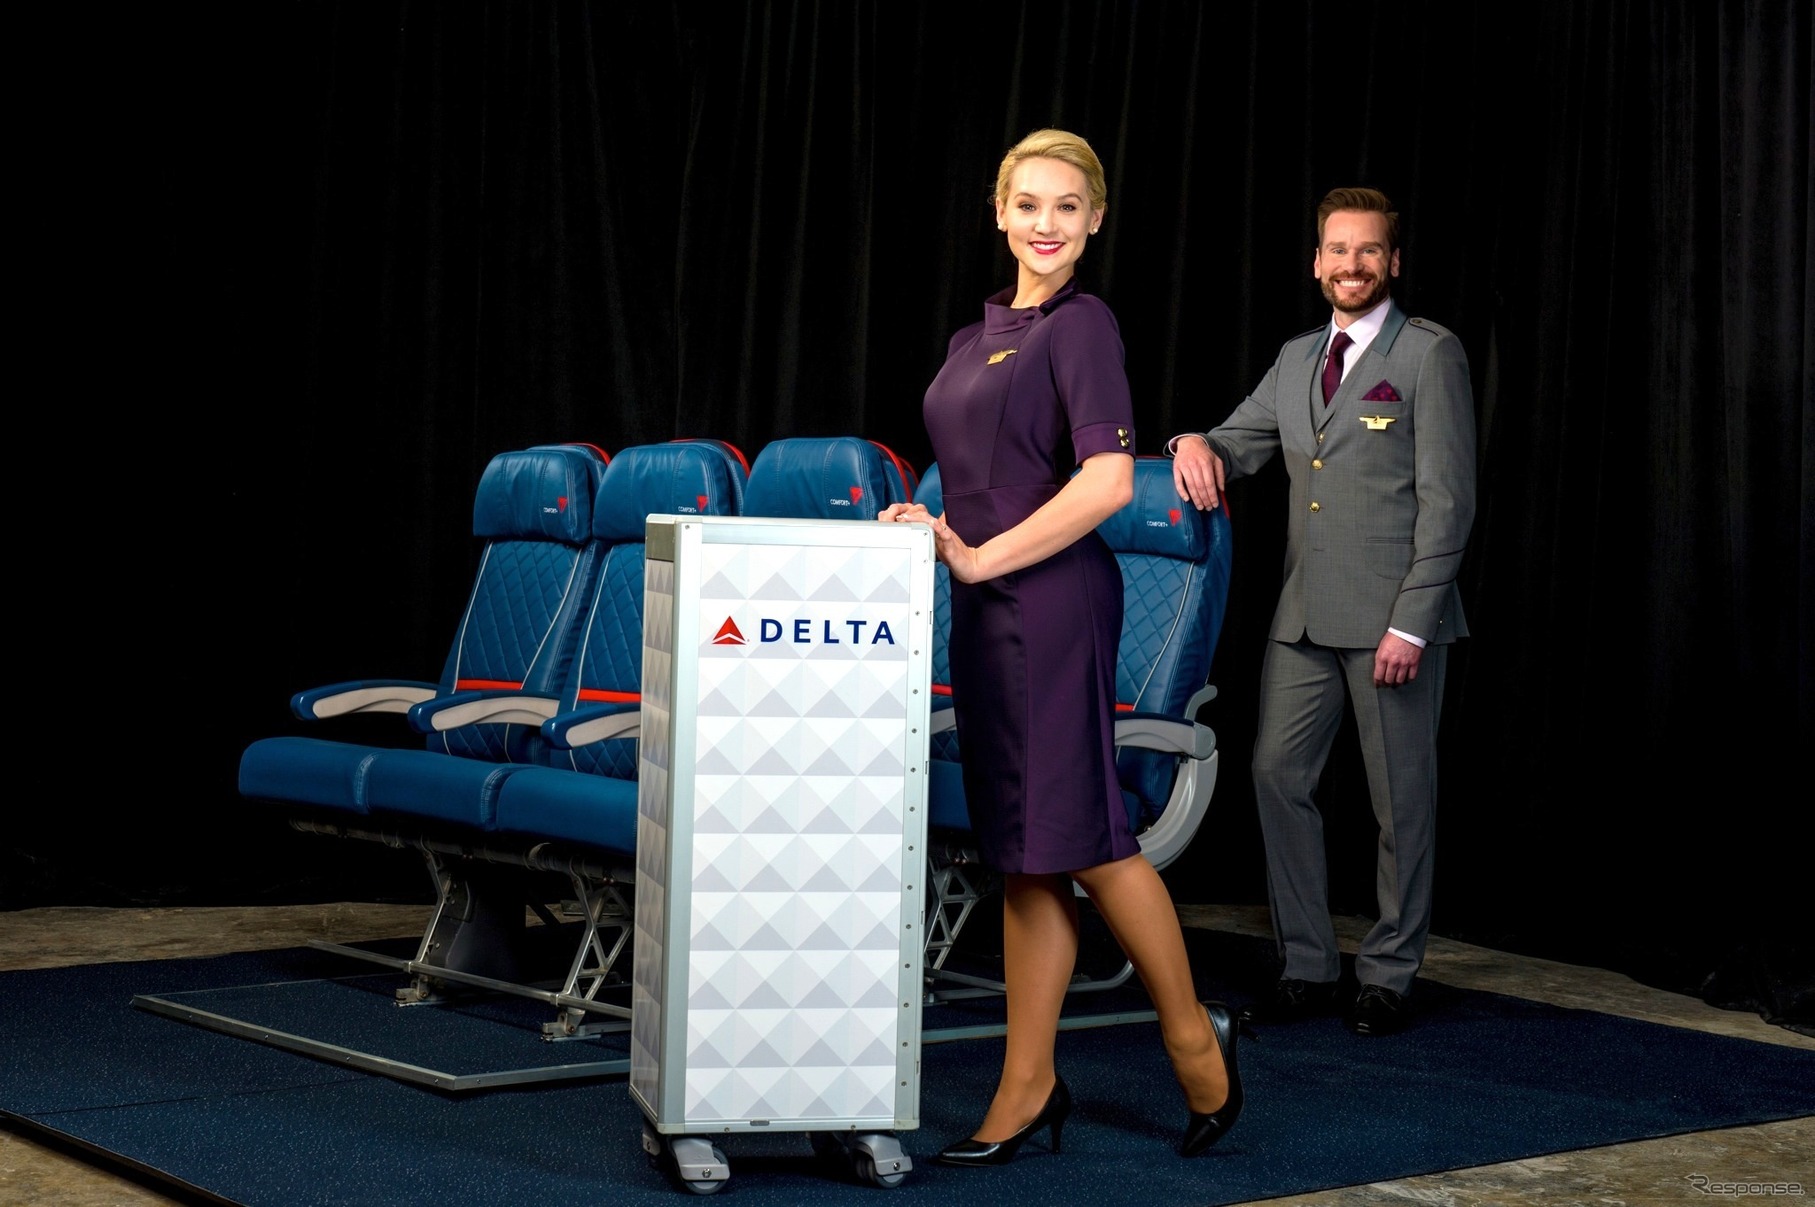 女性客室乗務員用パスポート・プラム色のVネックドレスと、男性客室乗務員用グランドスピード・グラファイト（濃いグレー色）のスリーピース・スーツ